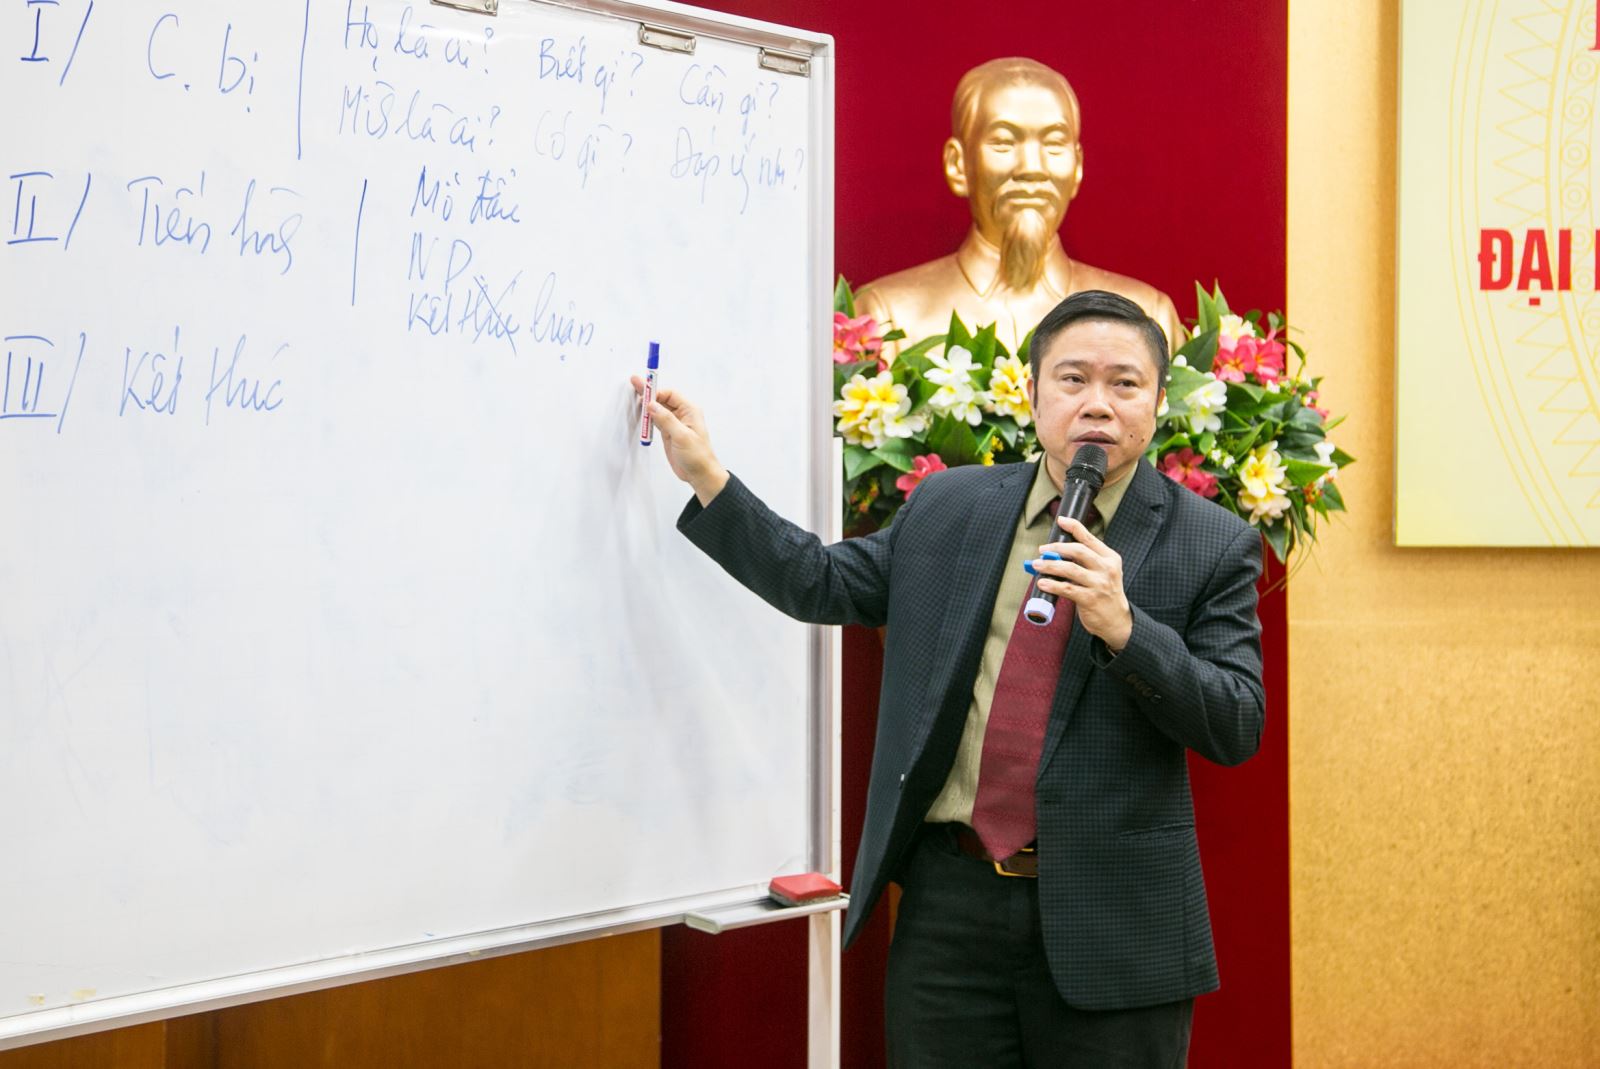 Chánh Văn phòng Học viện Hành chính Quốc gia - PGS.TS Nguyễn Văn Hậu chia sẻ về kỹ năng giám sát.